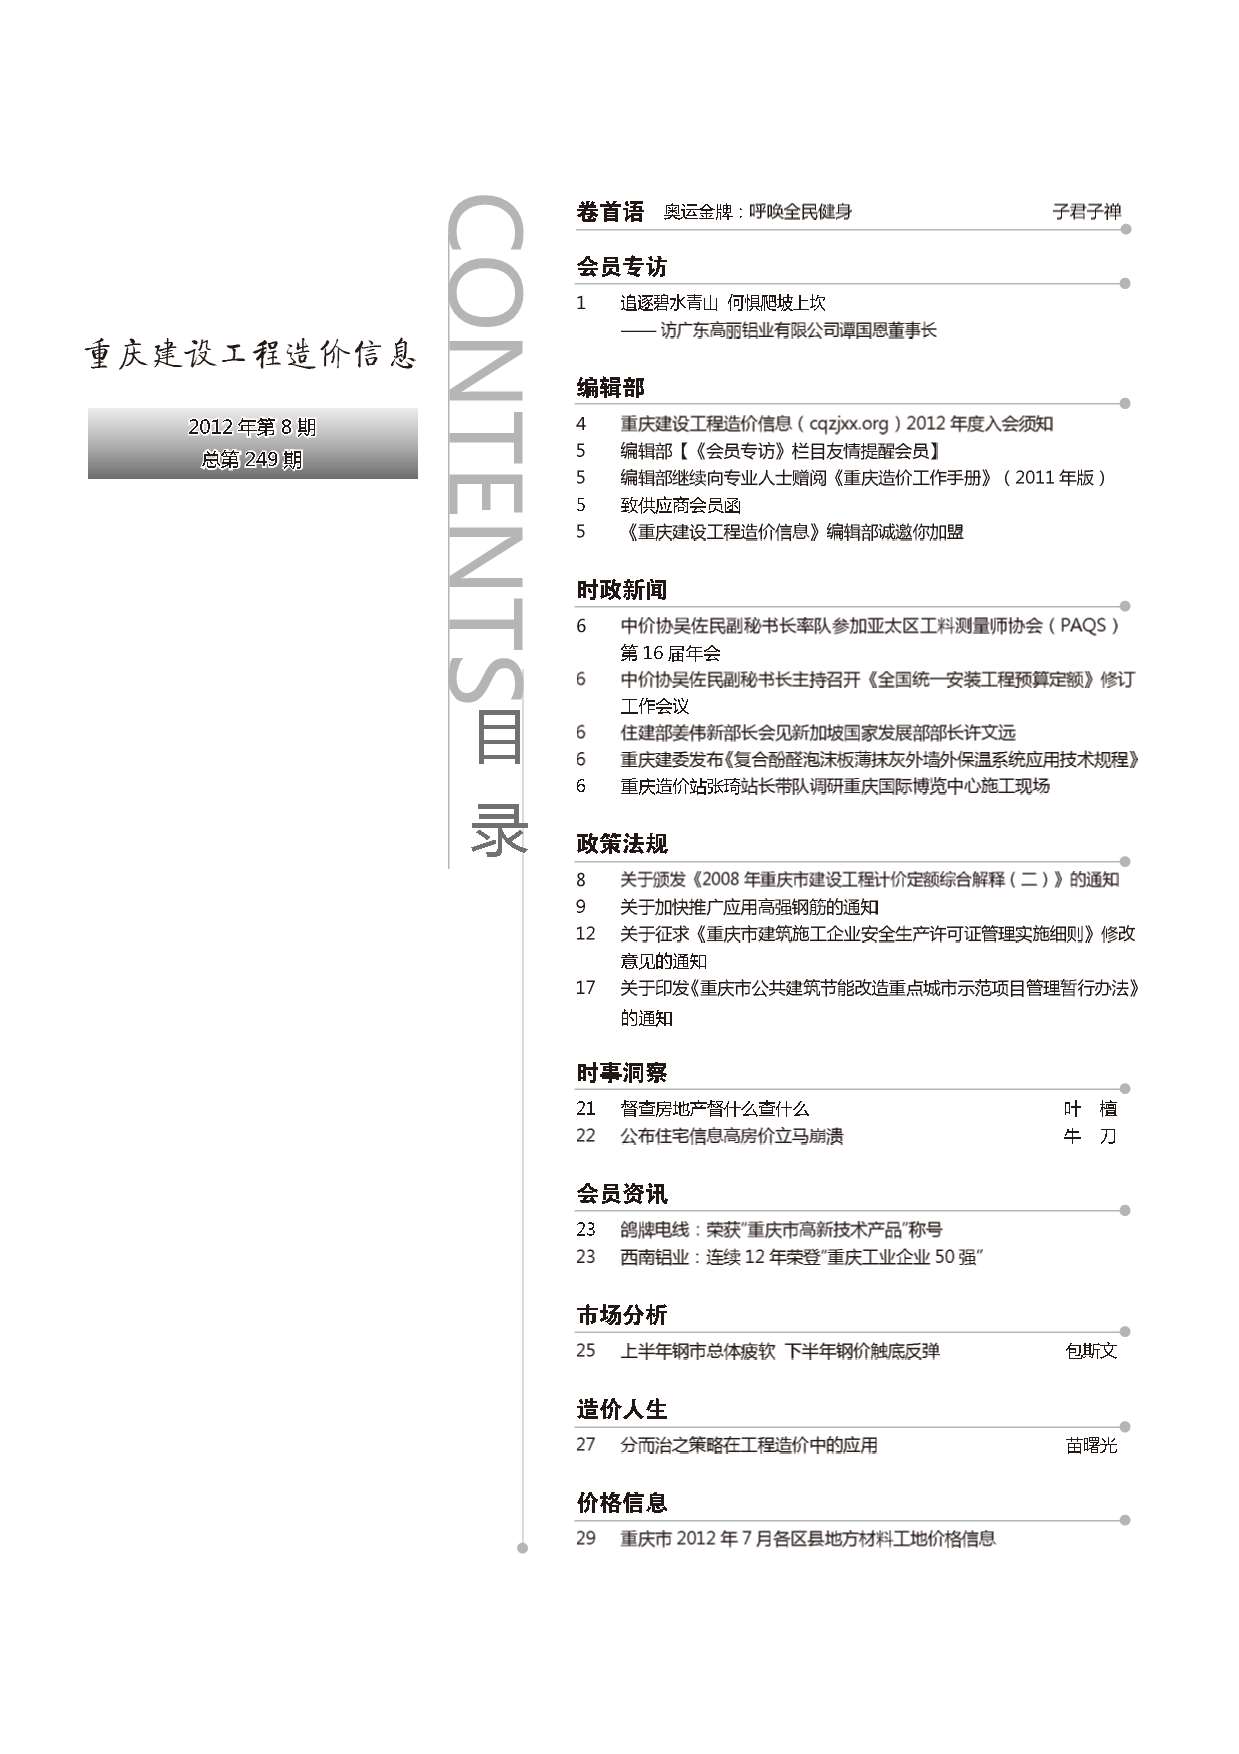 重庆市2012年8月工程造价信息造价库信息价